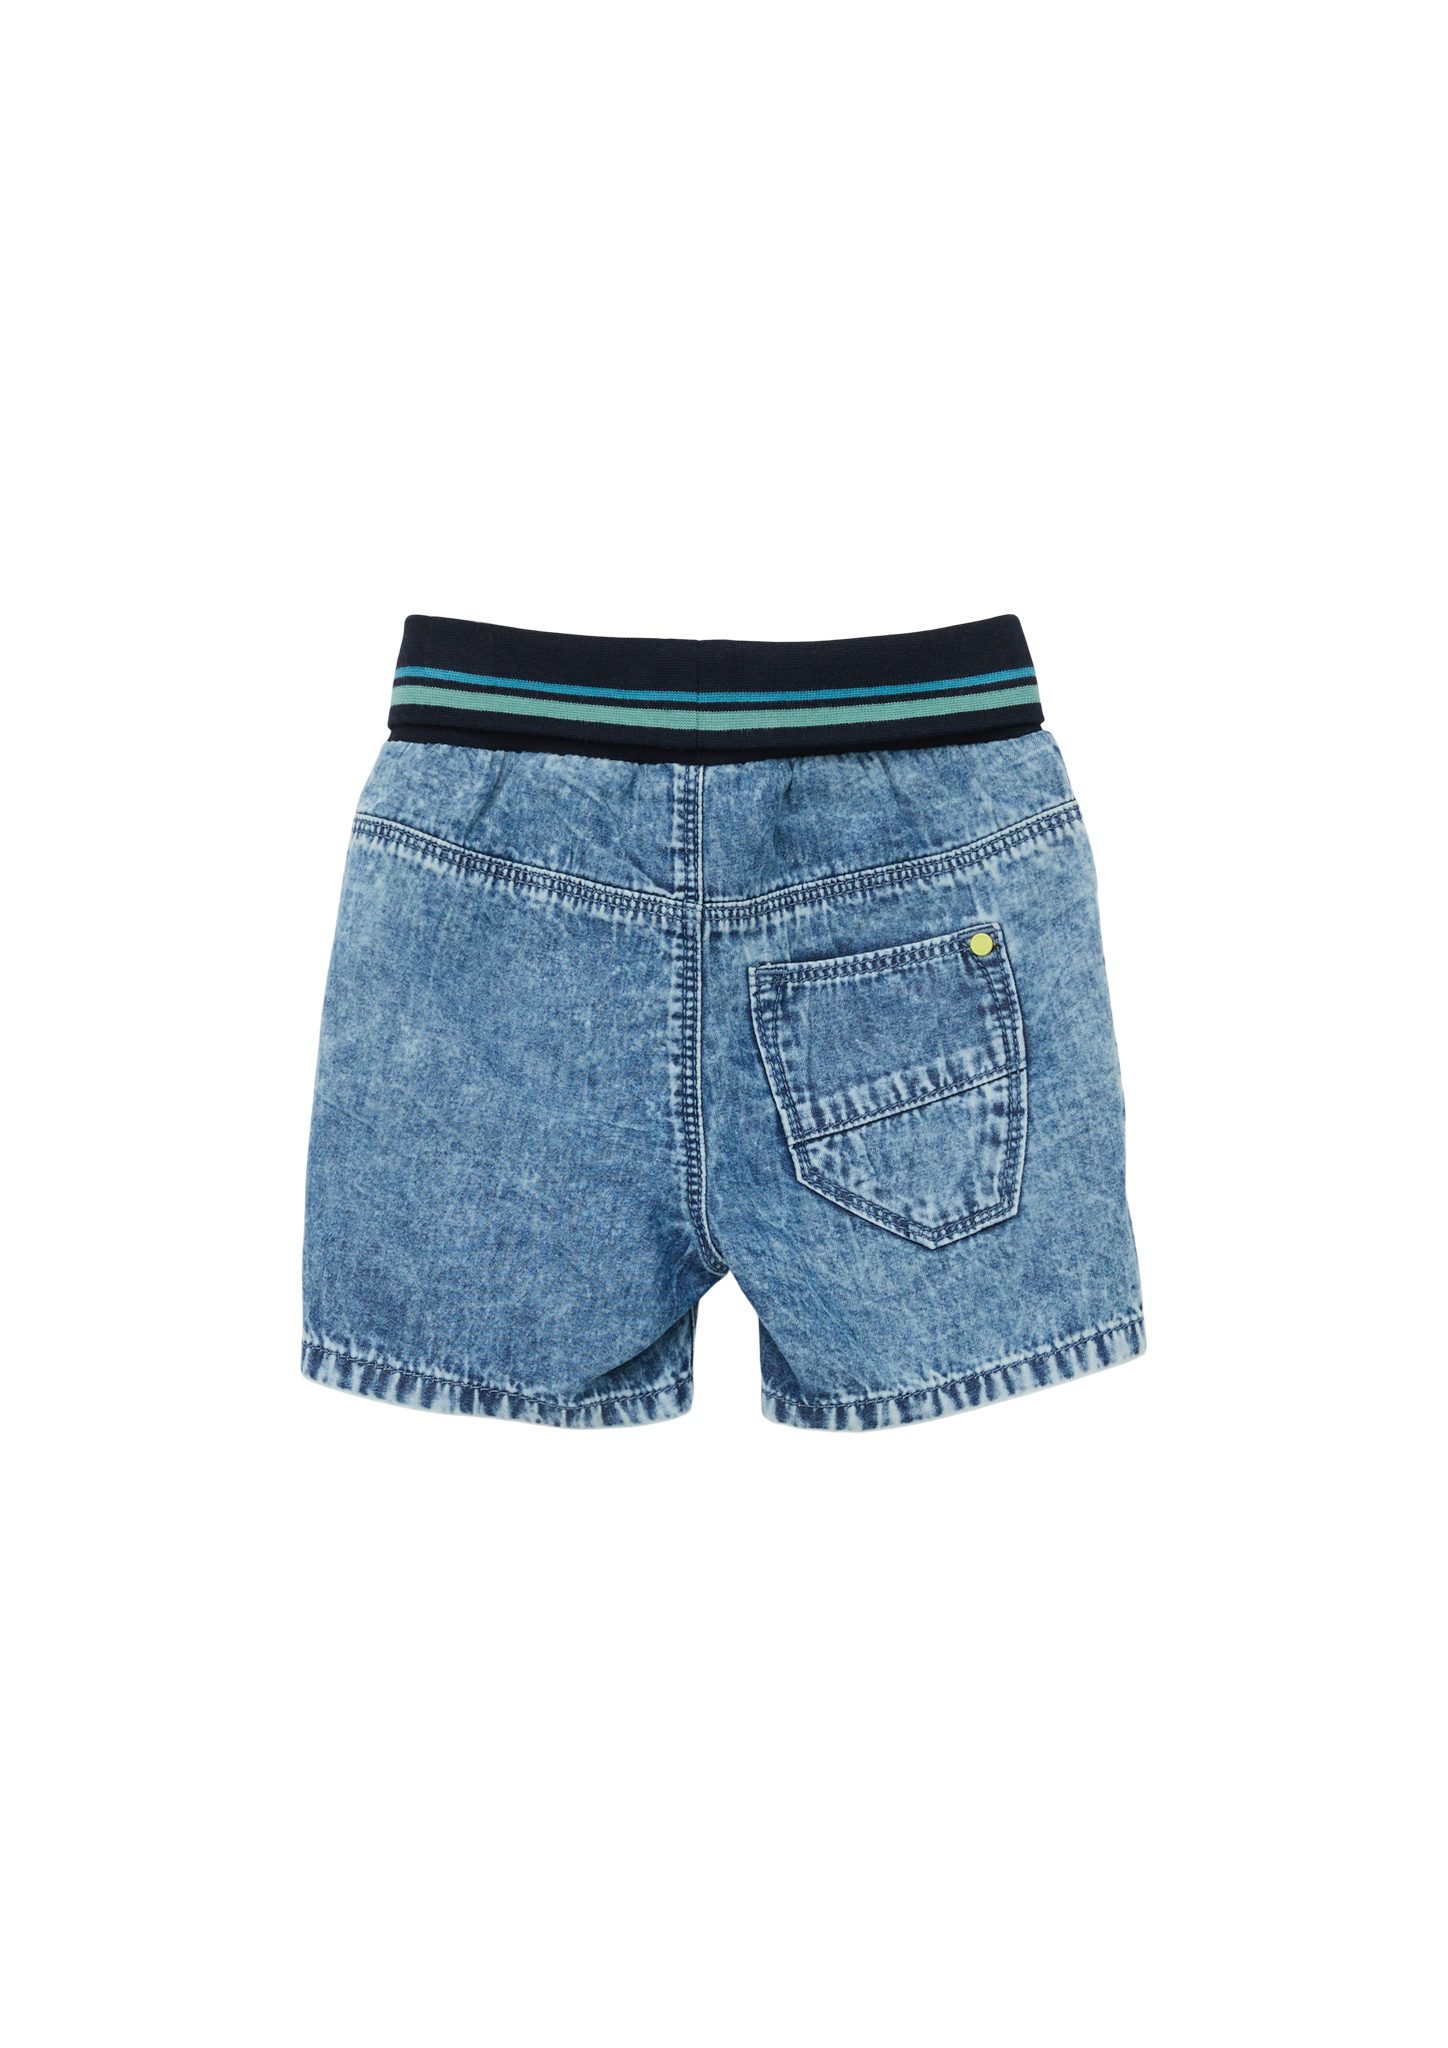 Regular Rise / Fit Shorts / Leg High Kontrast-Details Straight / Jeans-Shorts s.Oliver